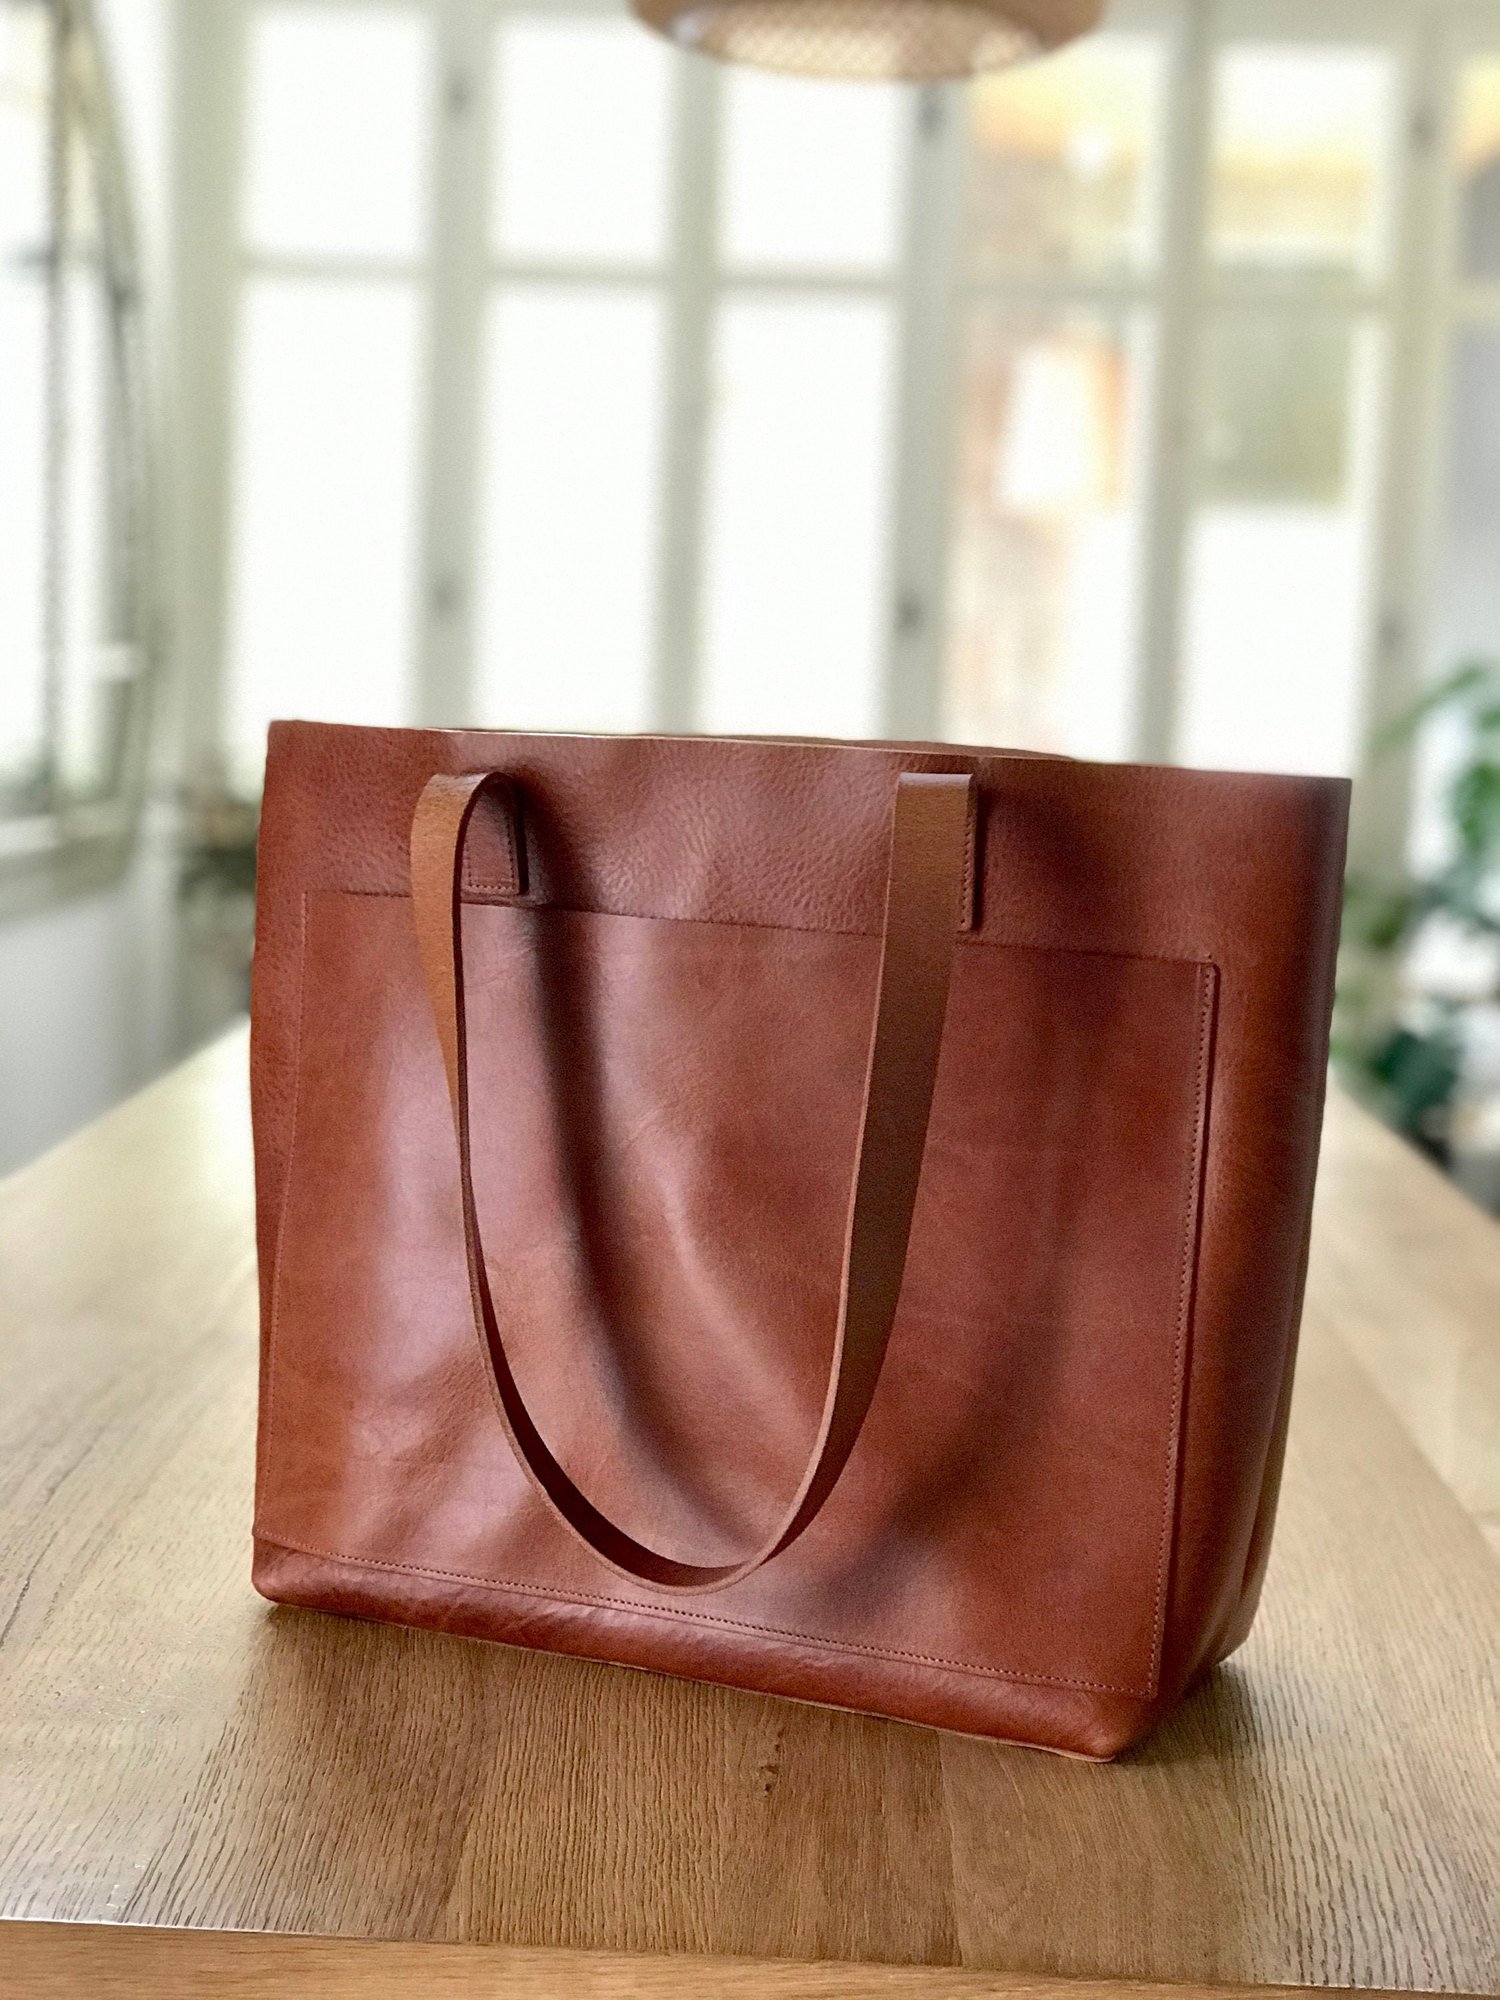 Natural Tan Leather Tote Bag 